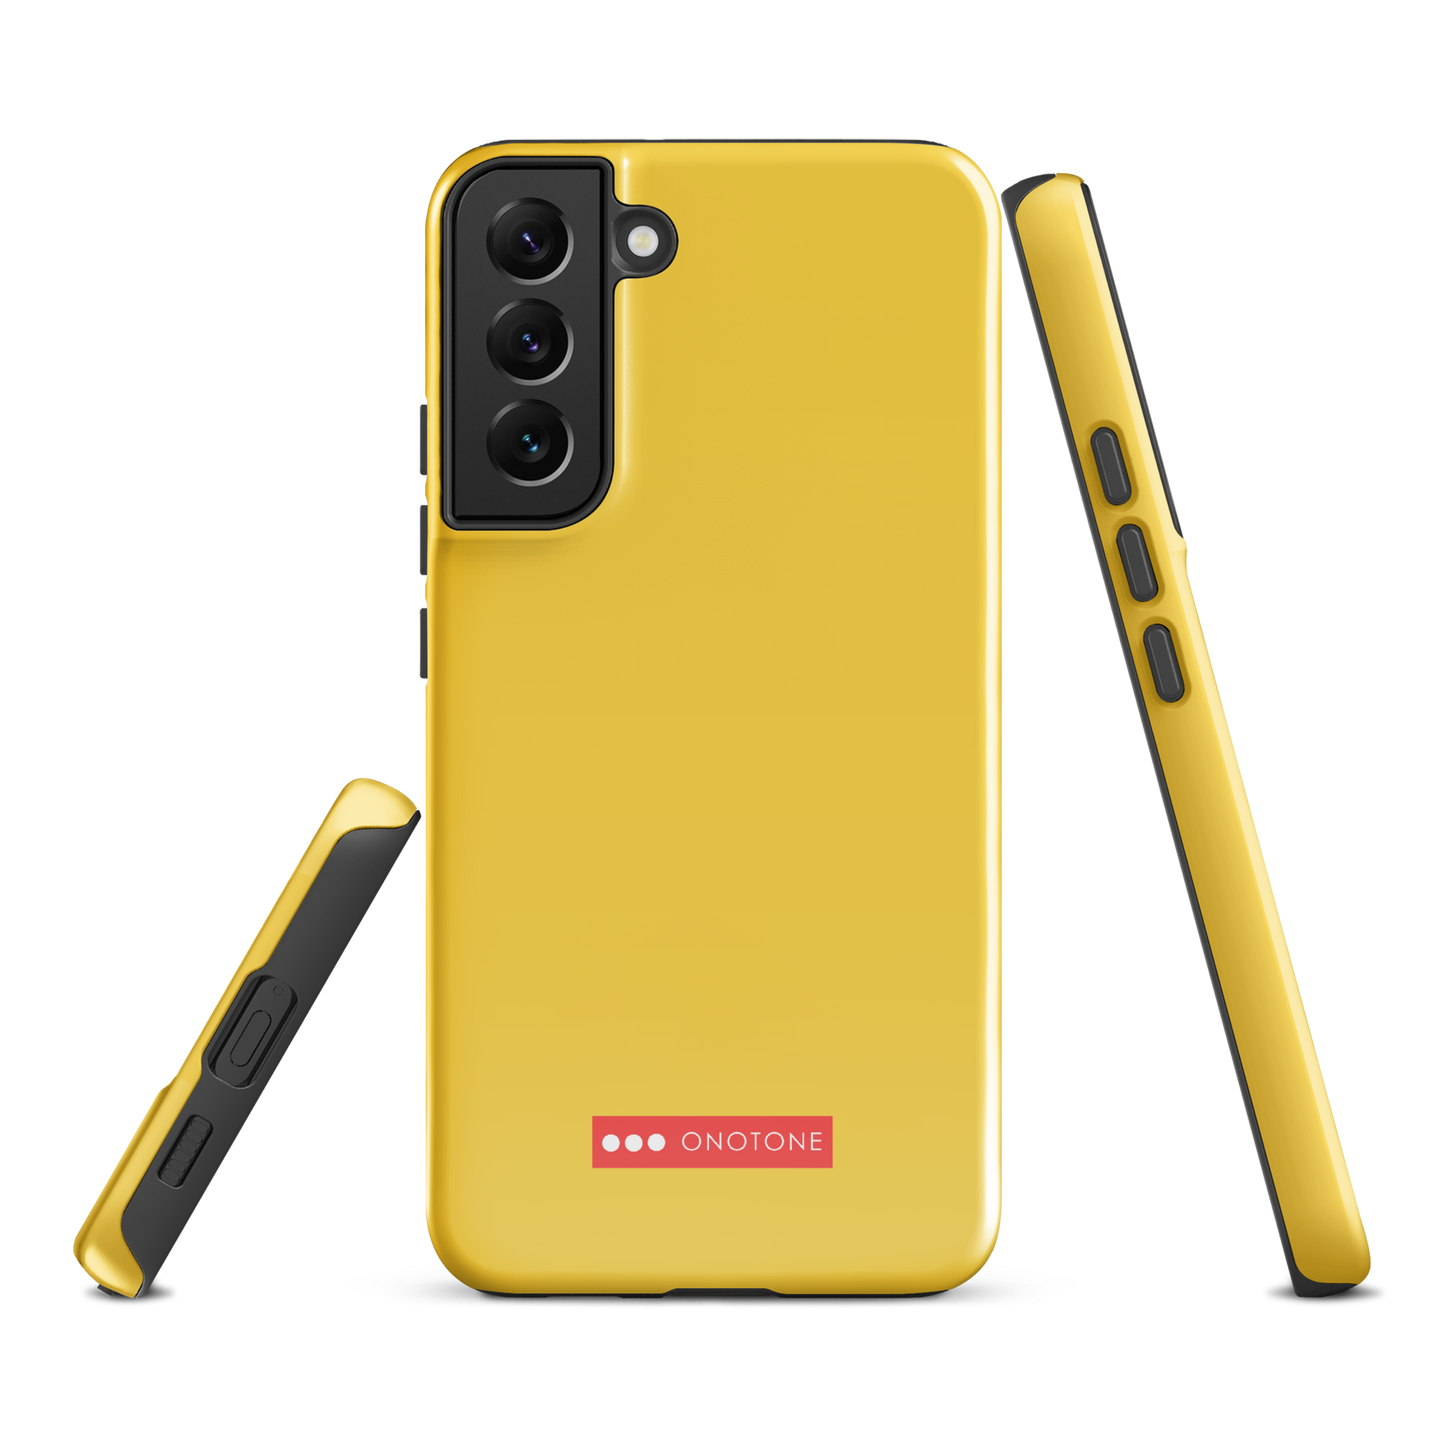 Solid Color Yellow Samsung Galaxy Case - Pantone® 128